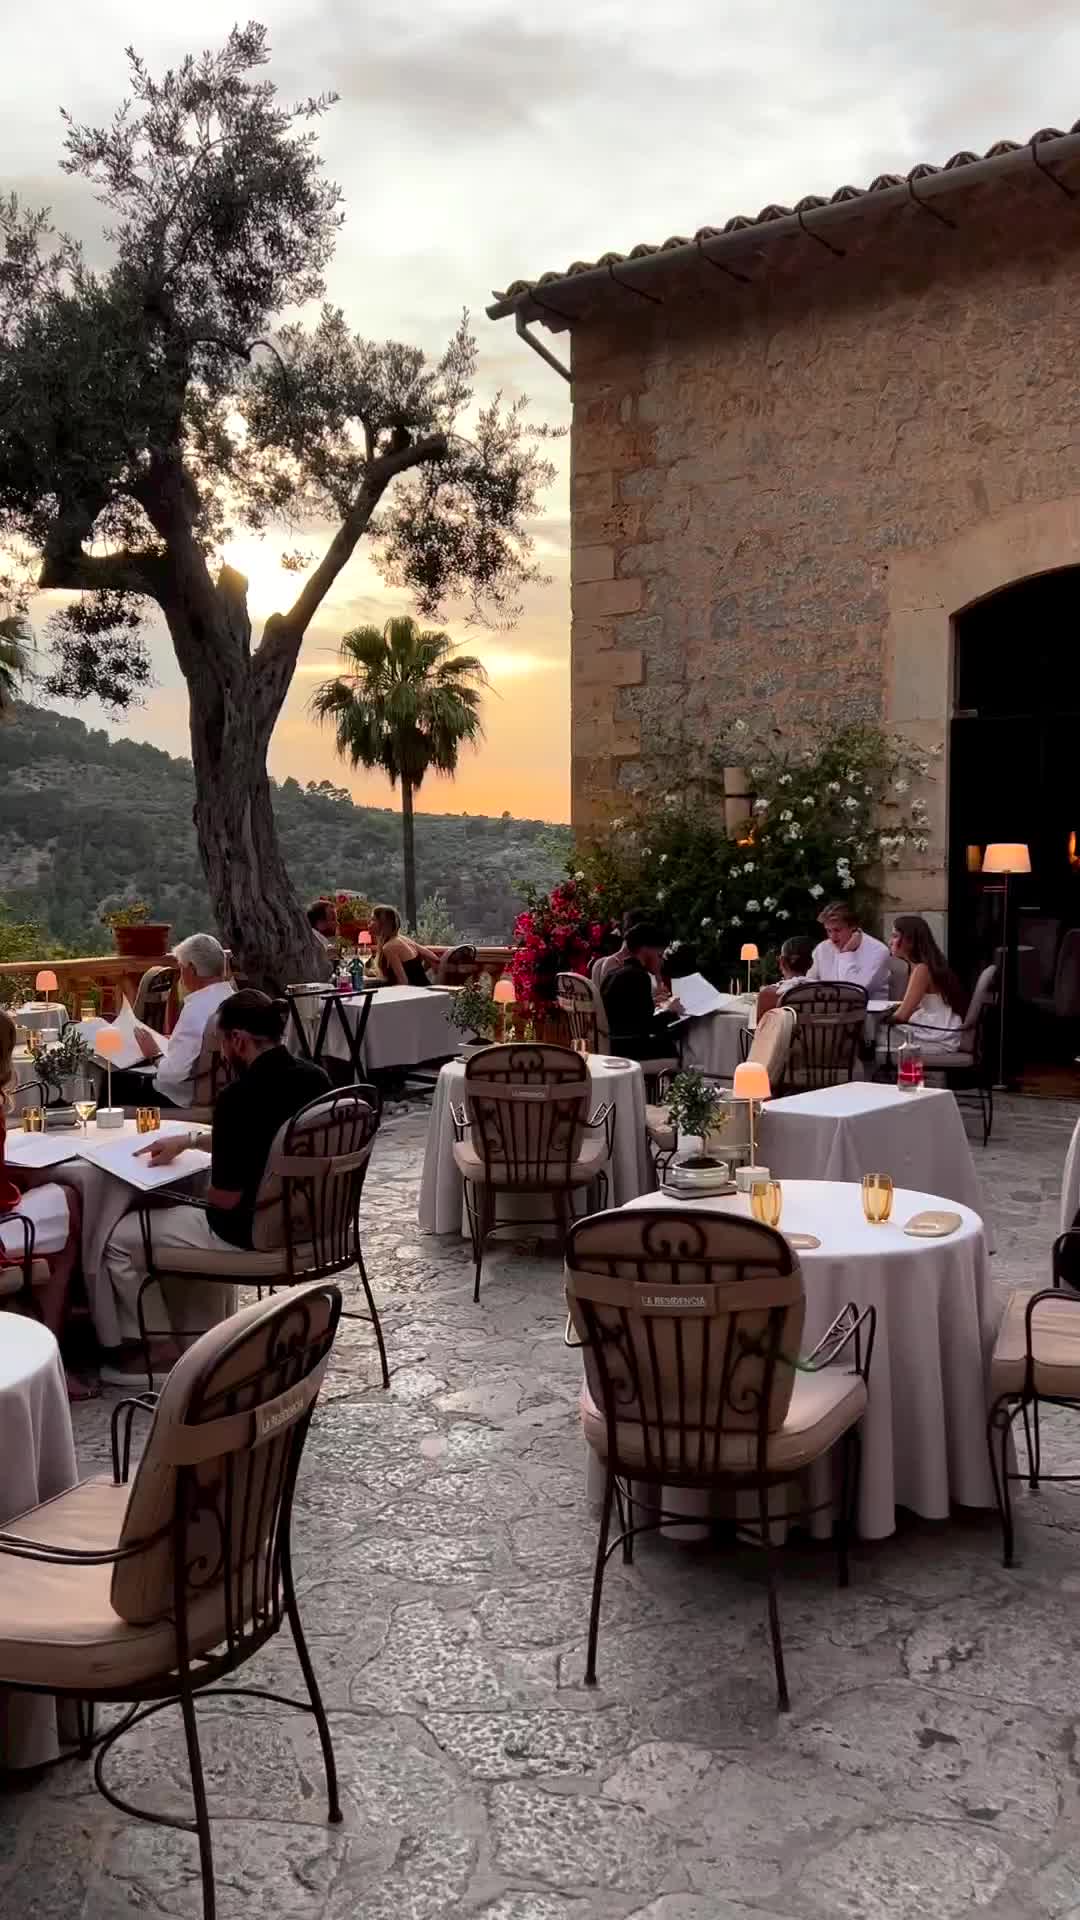 Best Date Night Spot: El Olivo, Deia, Mallorca